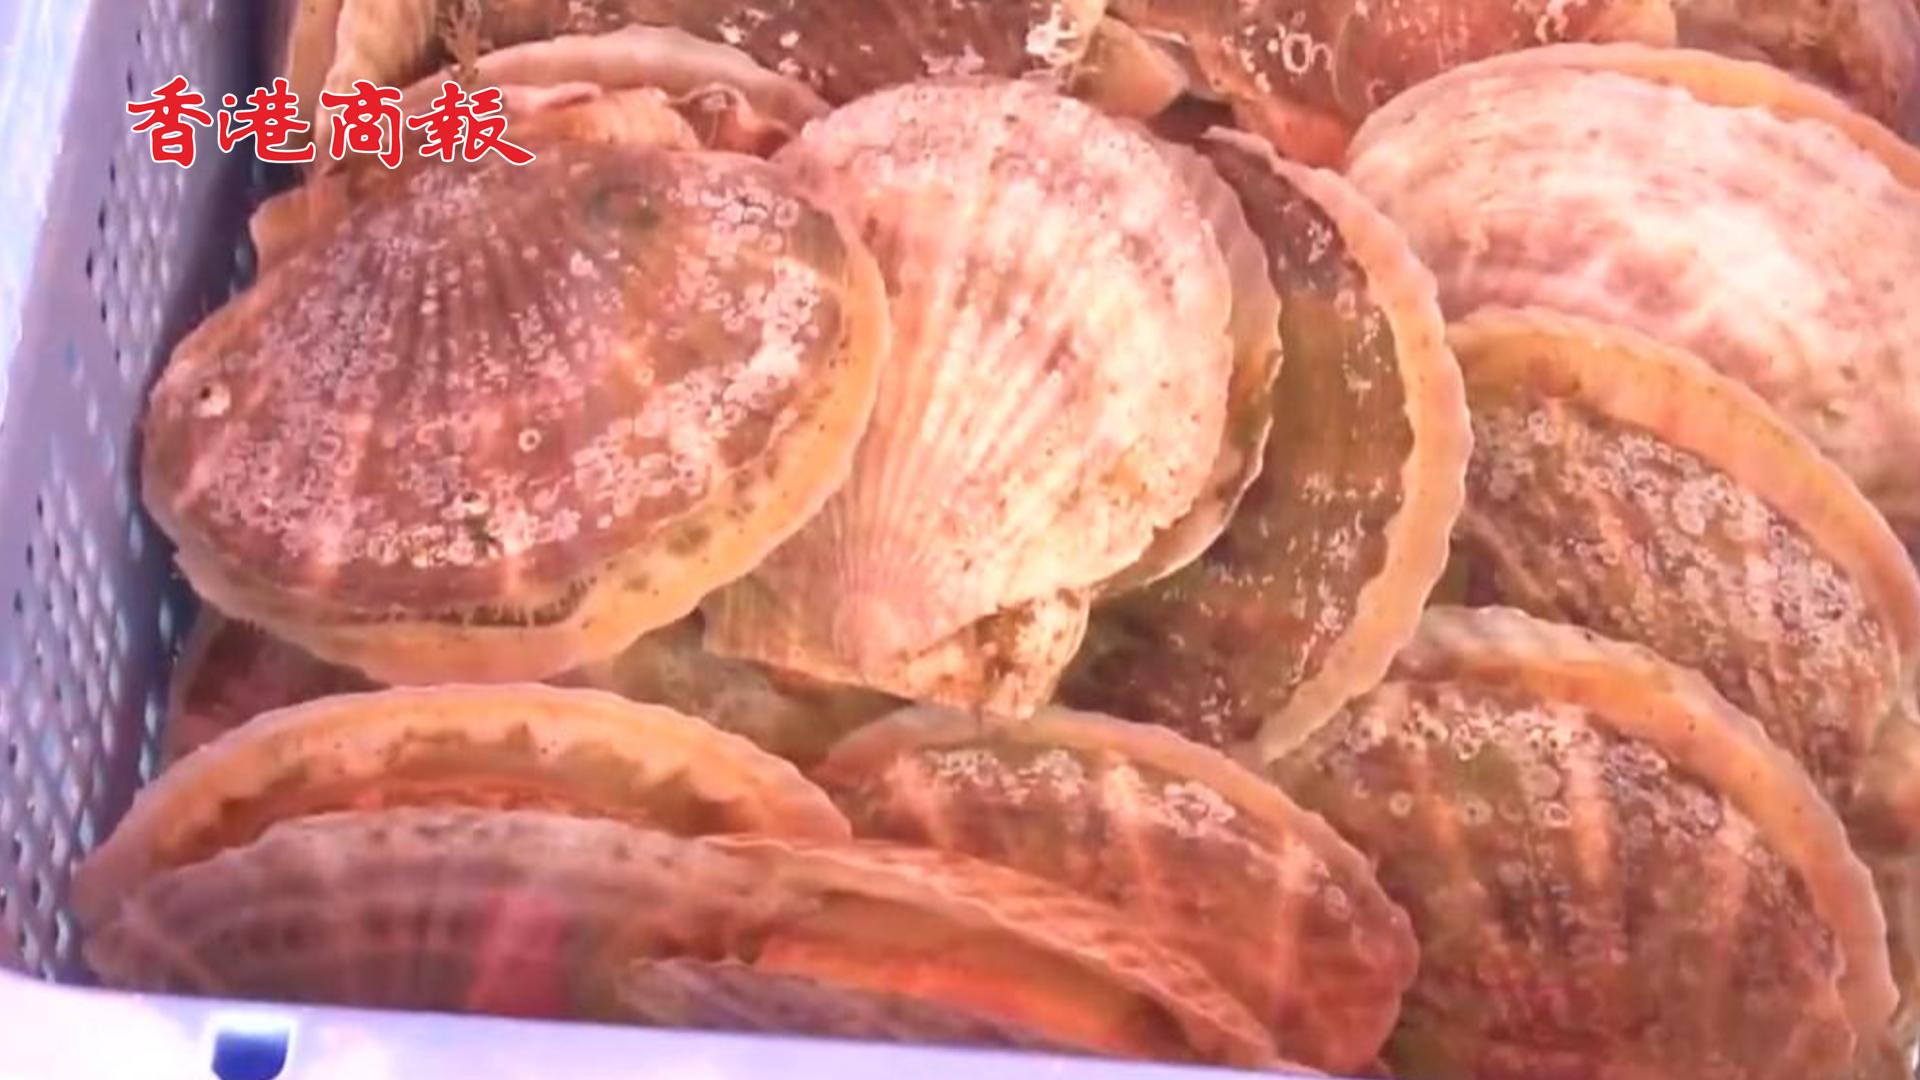 有片丨日本海鮮滯銷堆積成山 日本官員呼籲民眾每人多吃5隻扇貝